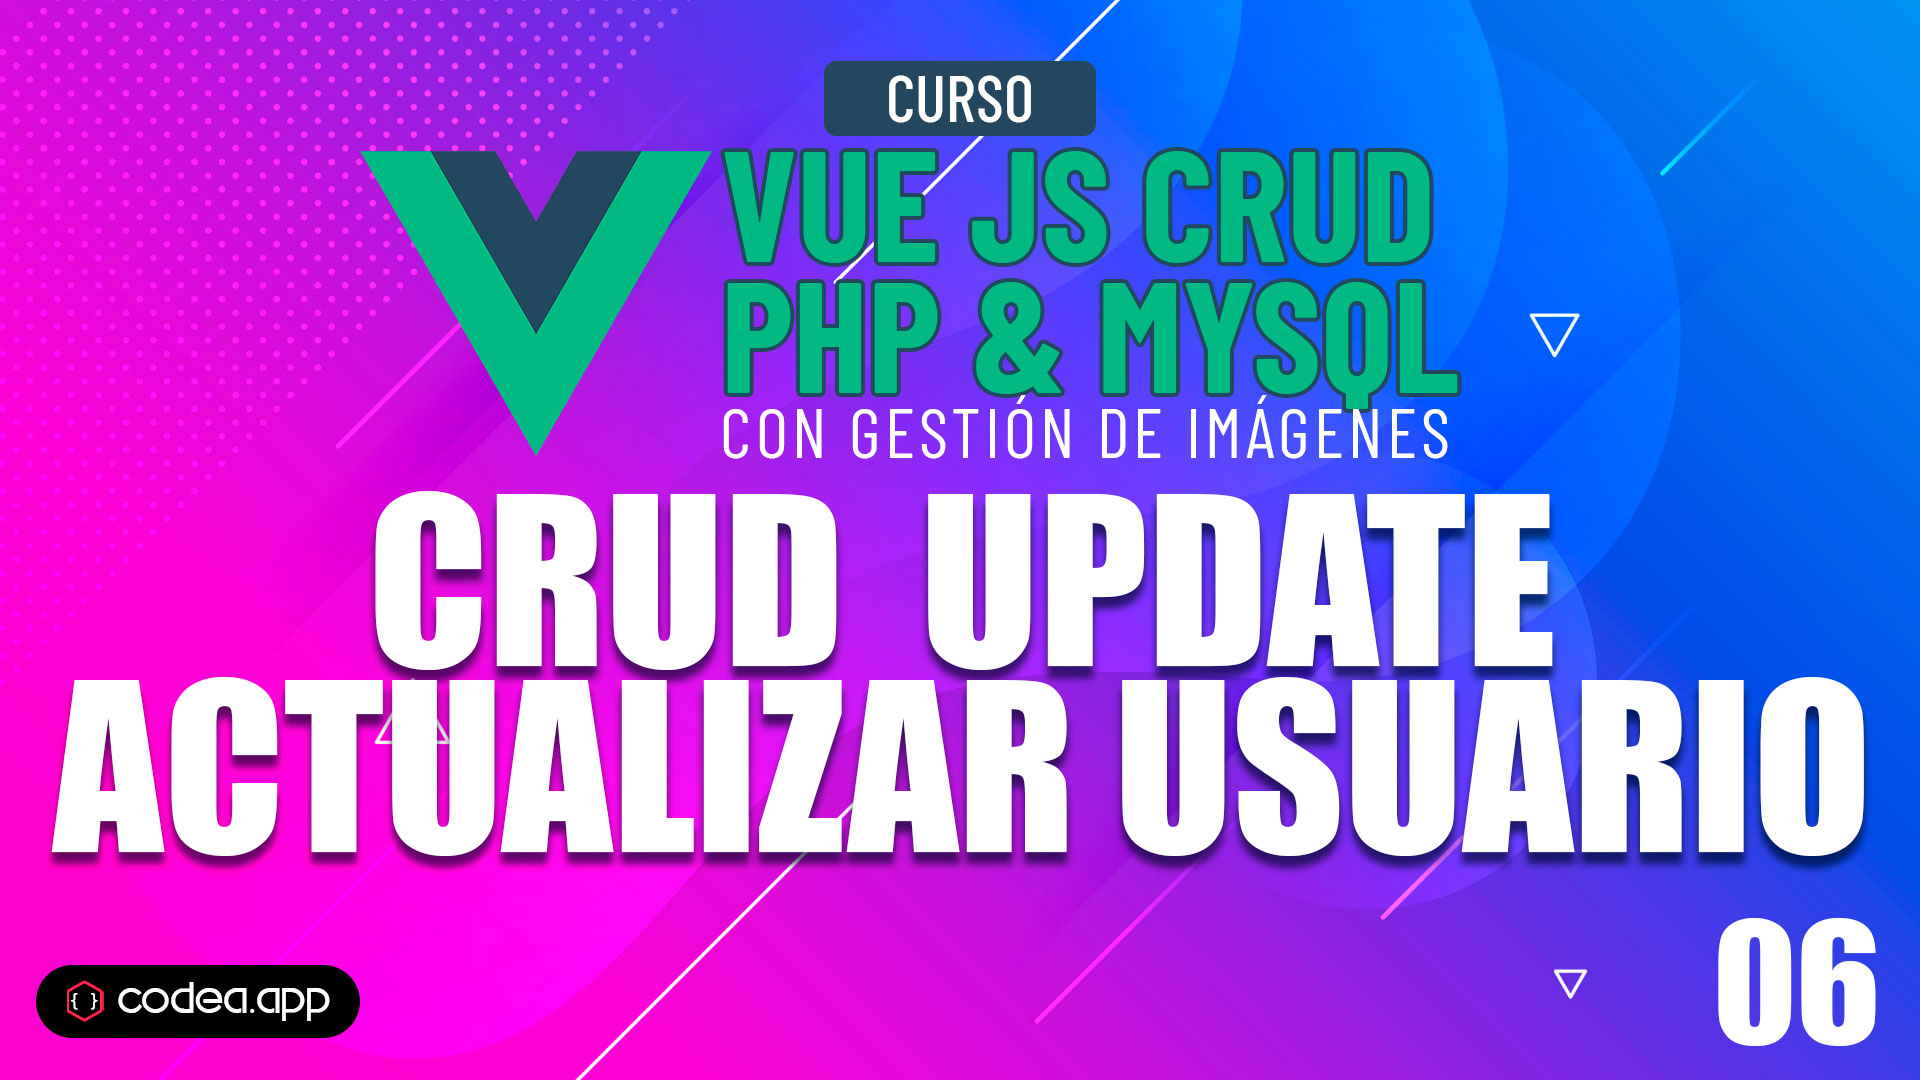 CRUD Update | Editar usuario con Vue.js y Axios JS